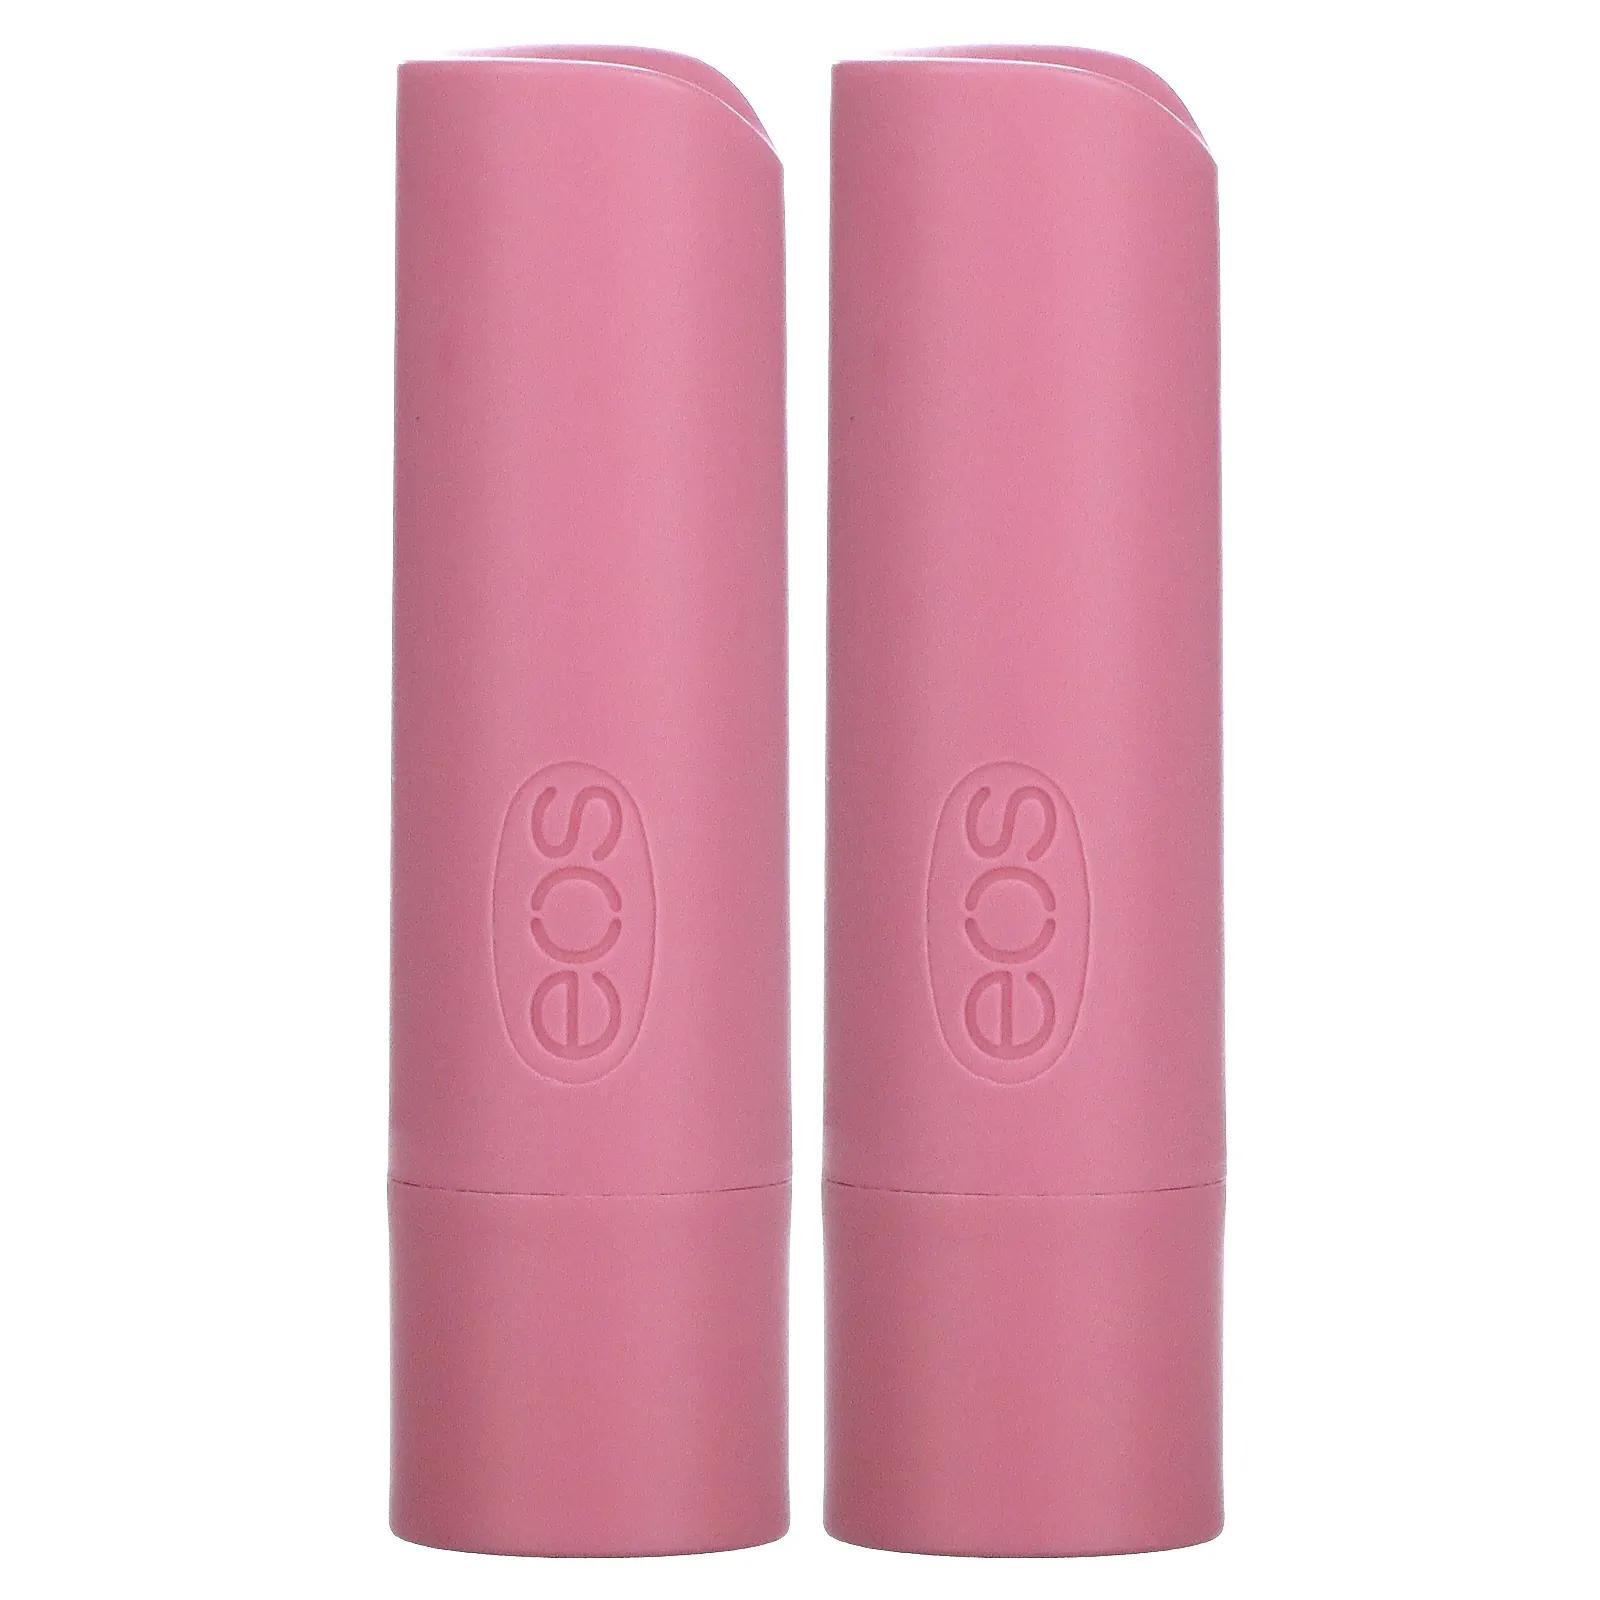 EOS Бальзам для губ клубничный сорбет 2 шт. .14 унции(4 г) каждый eos 100% натуральный бальзам для губ с маслом ши клубничный сорбет 2 шт 11 г 0 39 унции